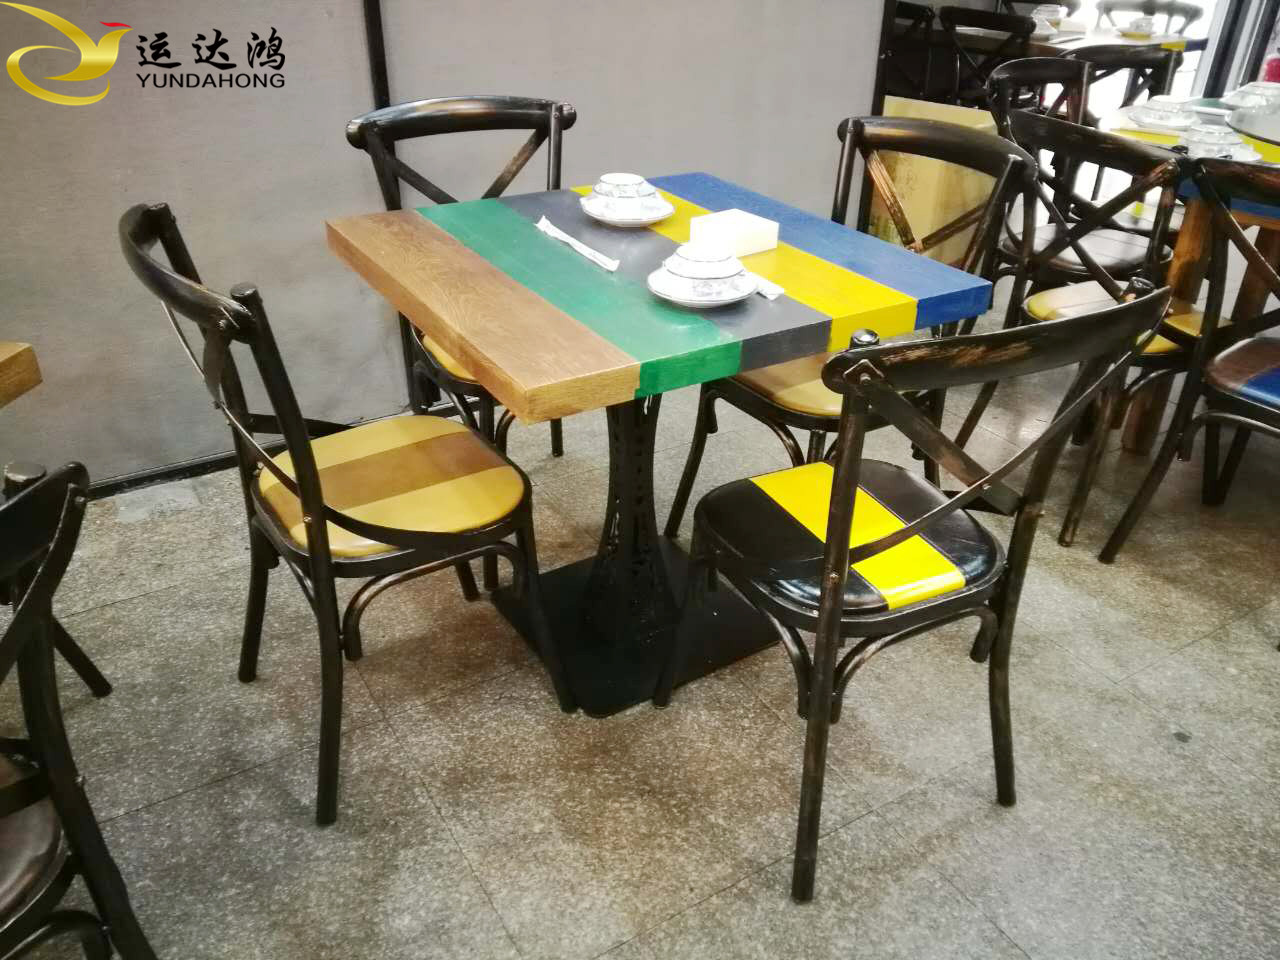 主题餐厅家具 主题餐厅桌椅定制 创意主题餐桌椅价格餐厅家具工厂